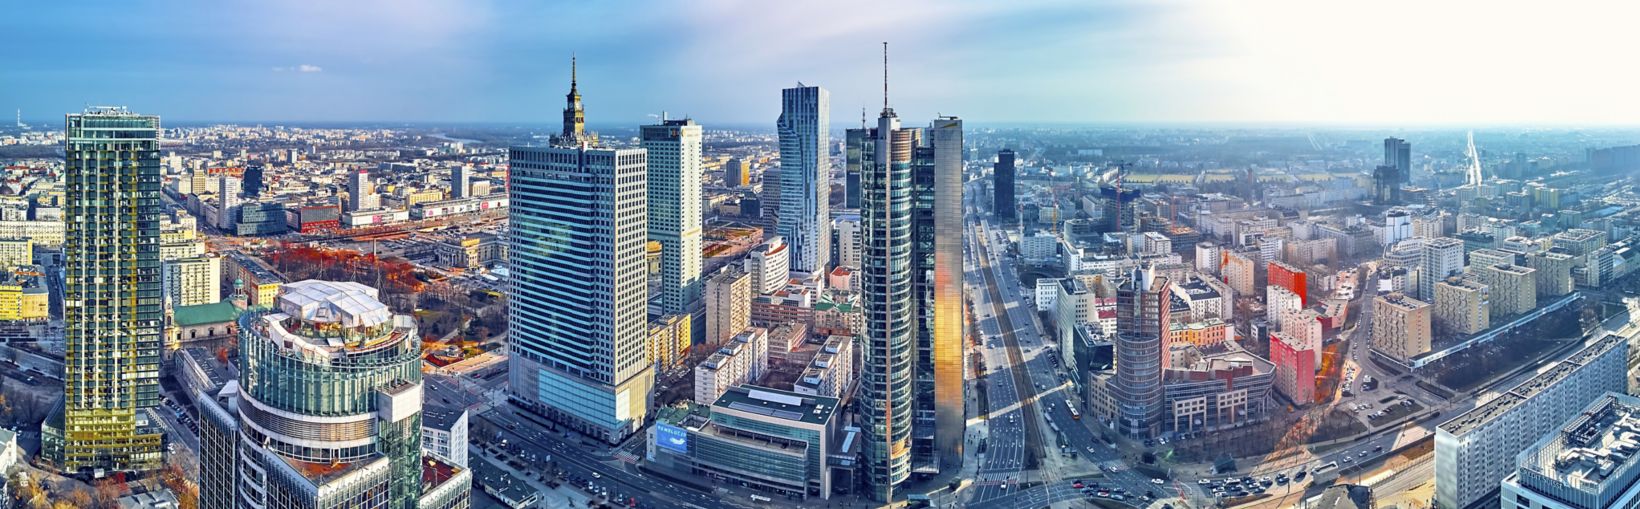 Belle vue panoramique aérienne par drone de la ville moderne de Varsovie